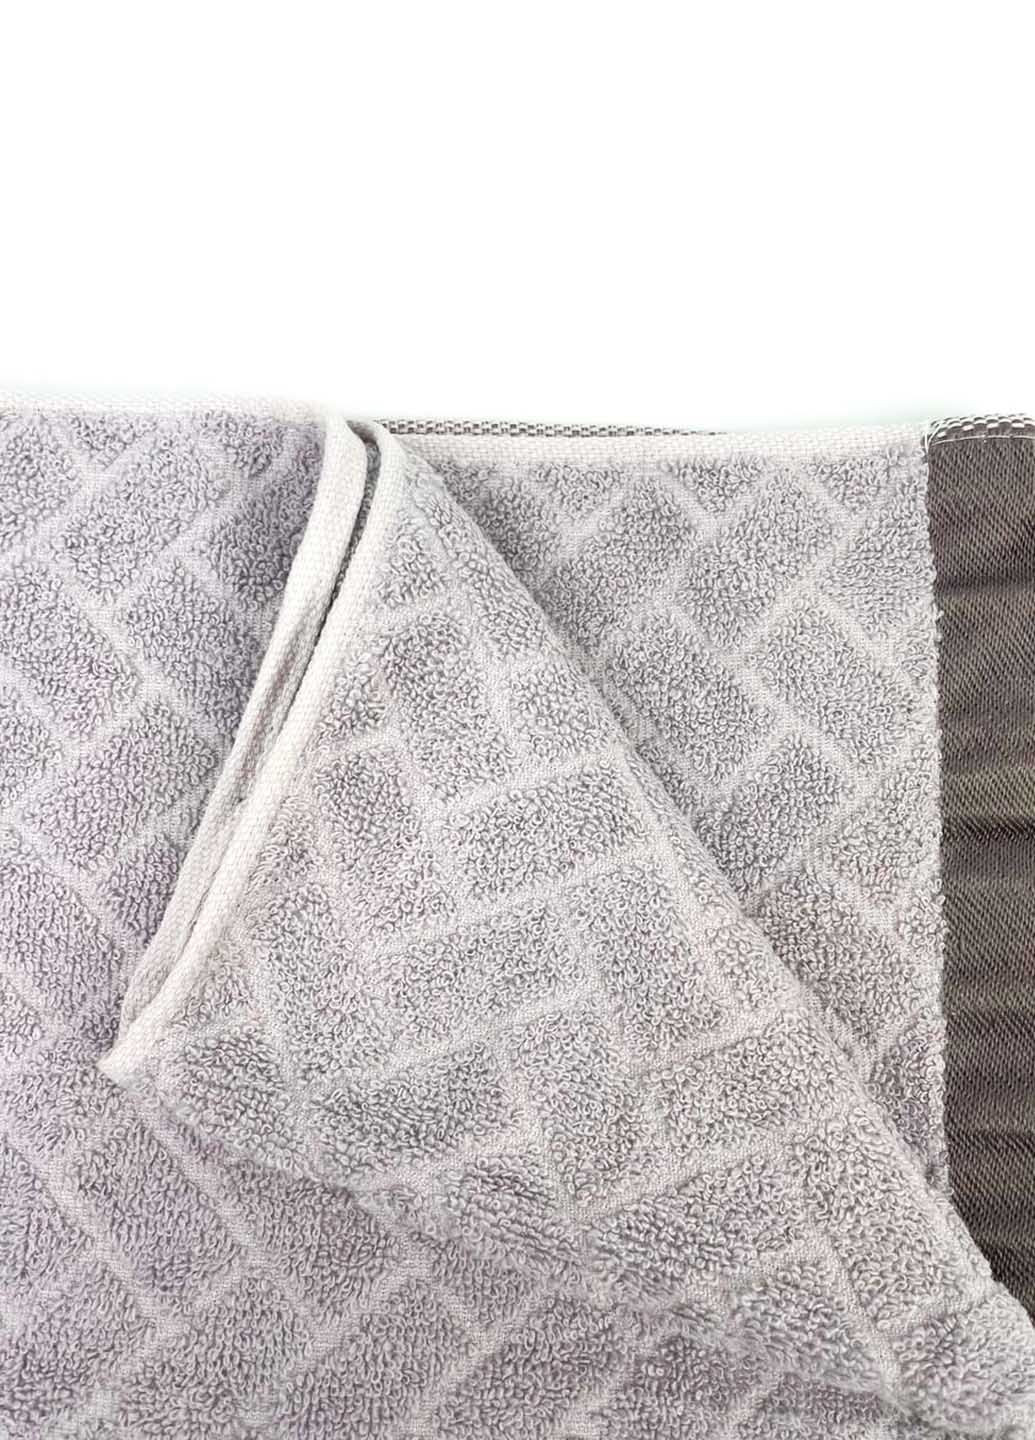 Homedec полотенце лицевое махровое 100х50 см абстрактный серо-бежевый производство - Турция